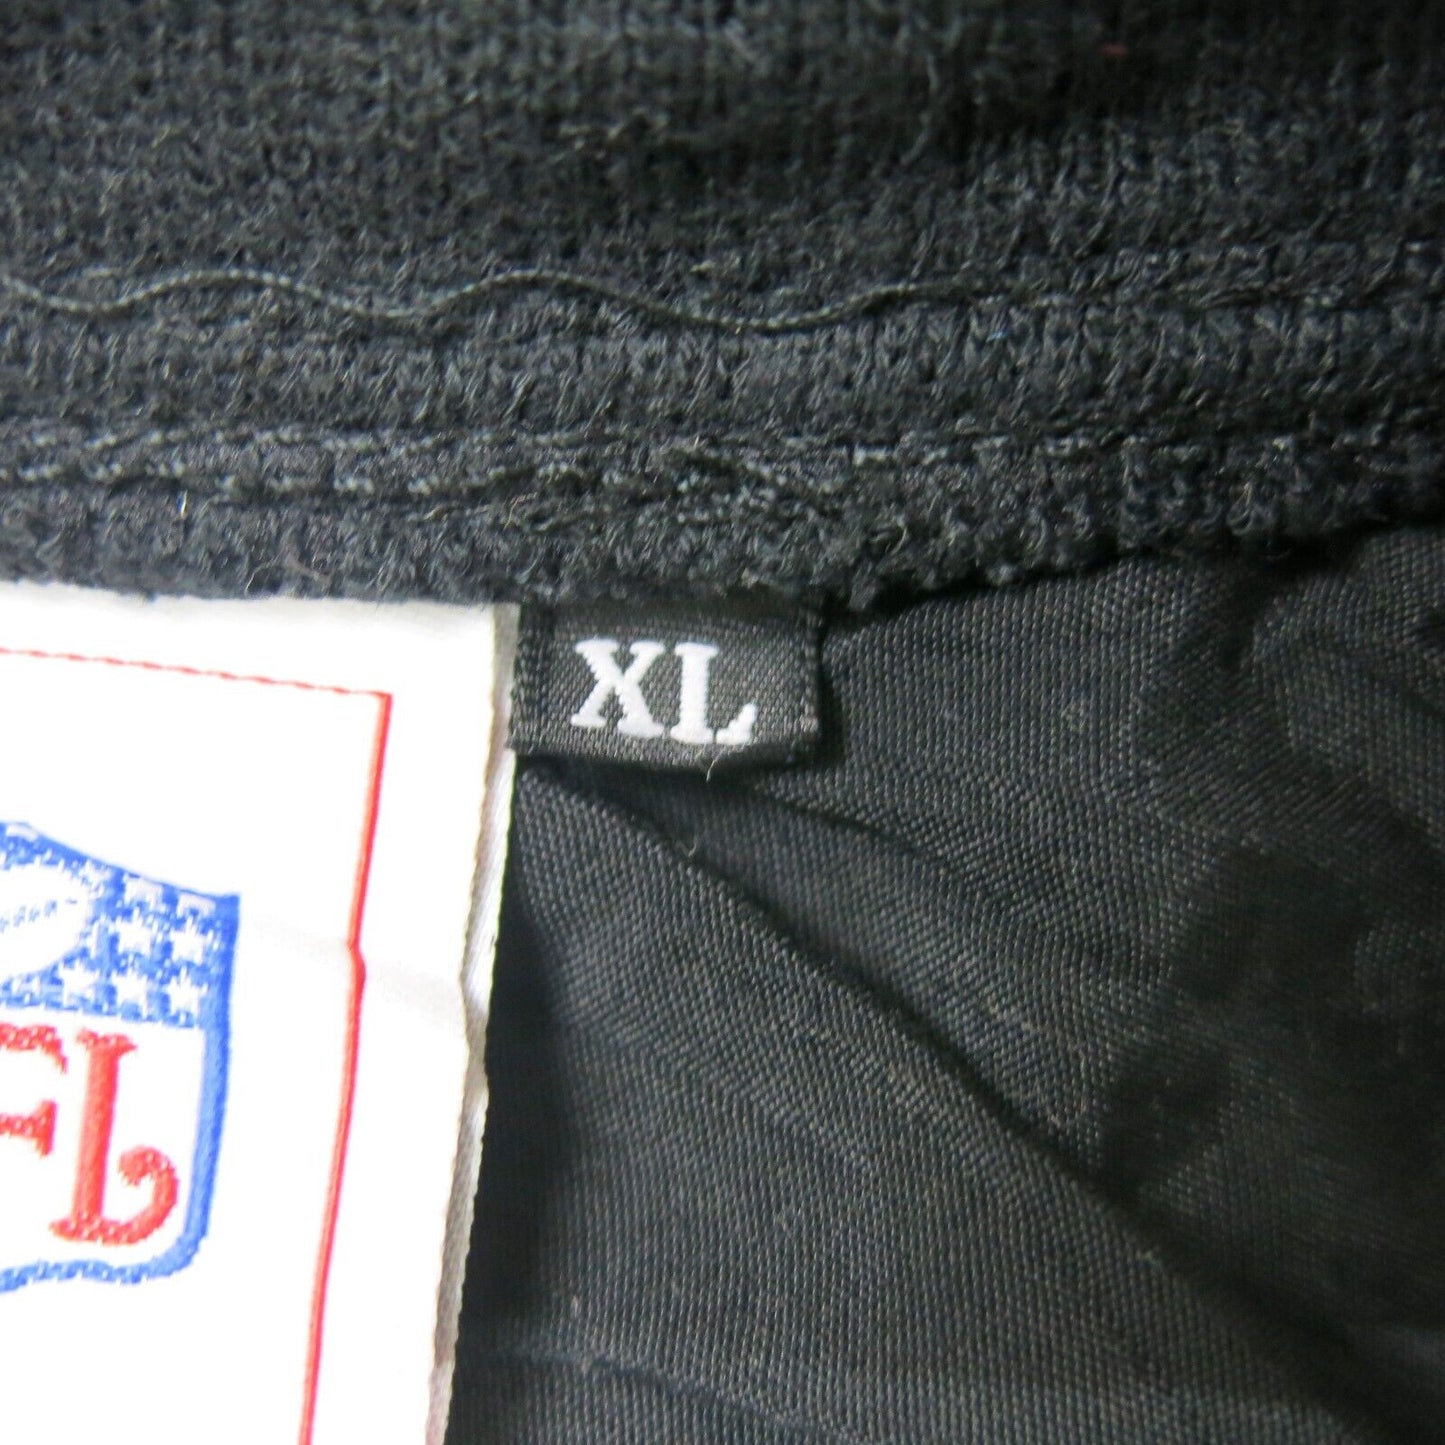 NFL Mens Sports Jacket Long Sleeves Pullover V Neck Logo Black Size X Large